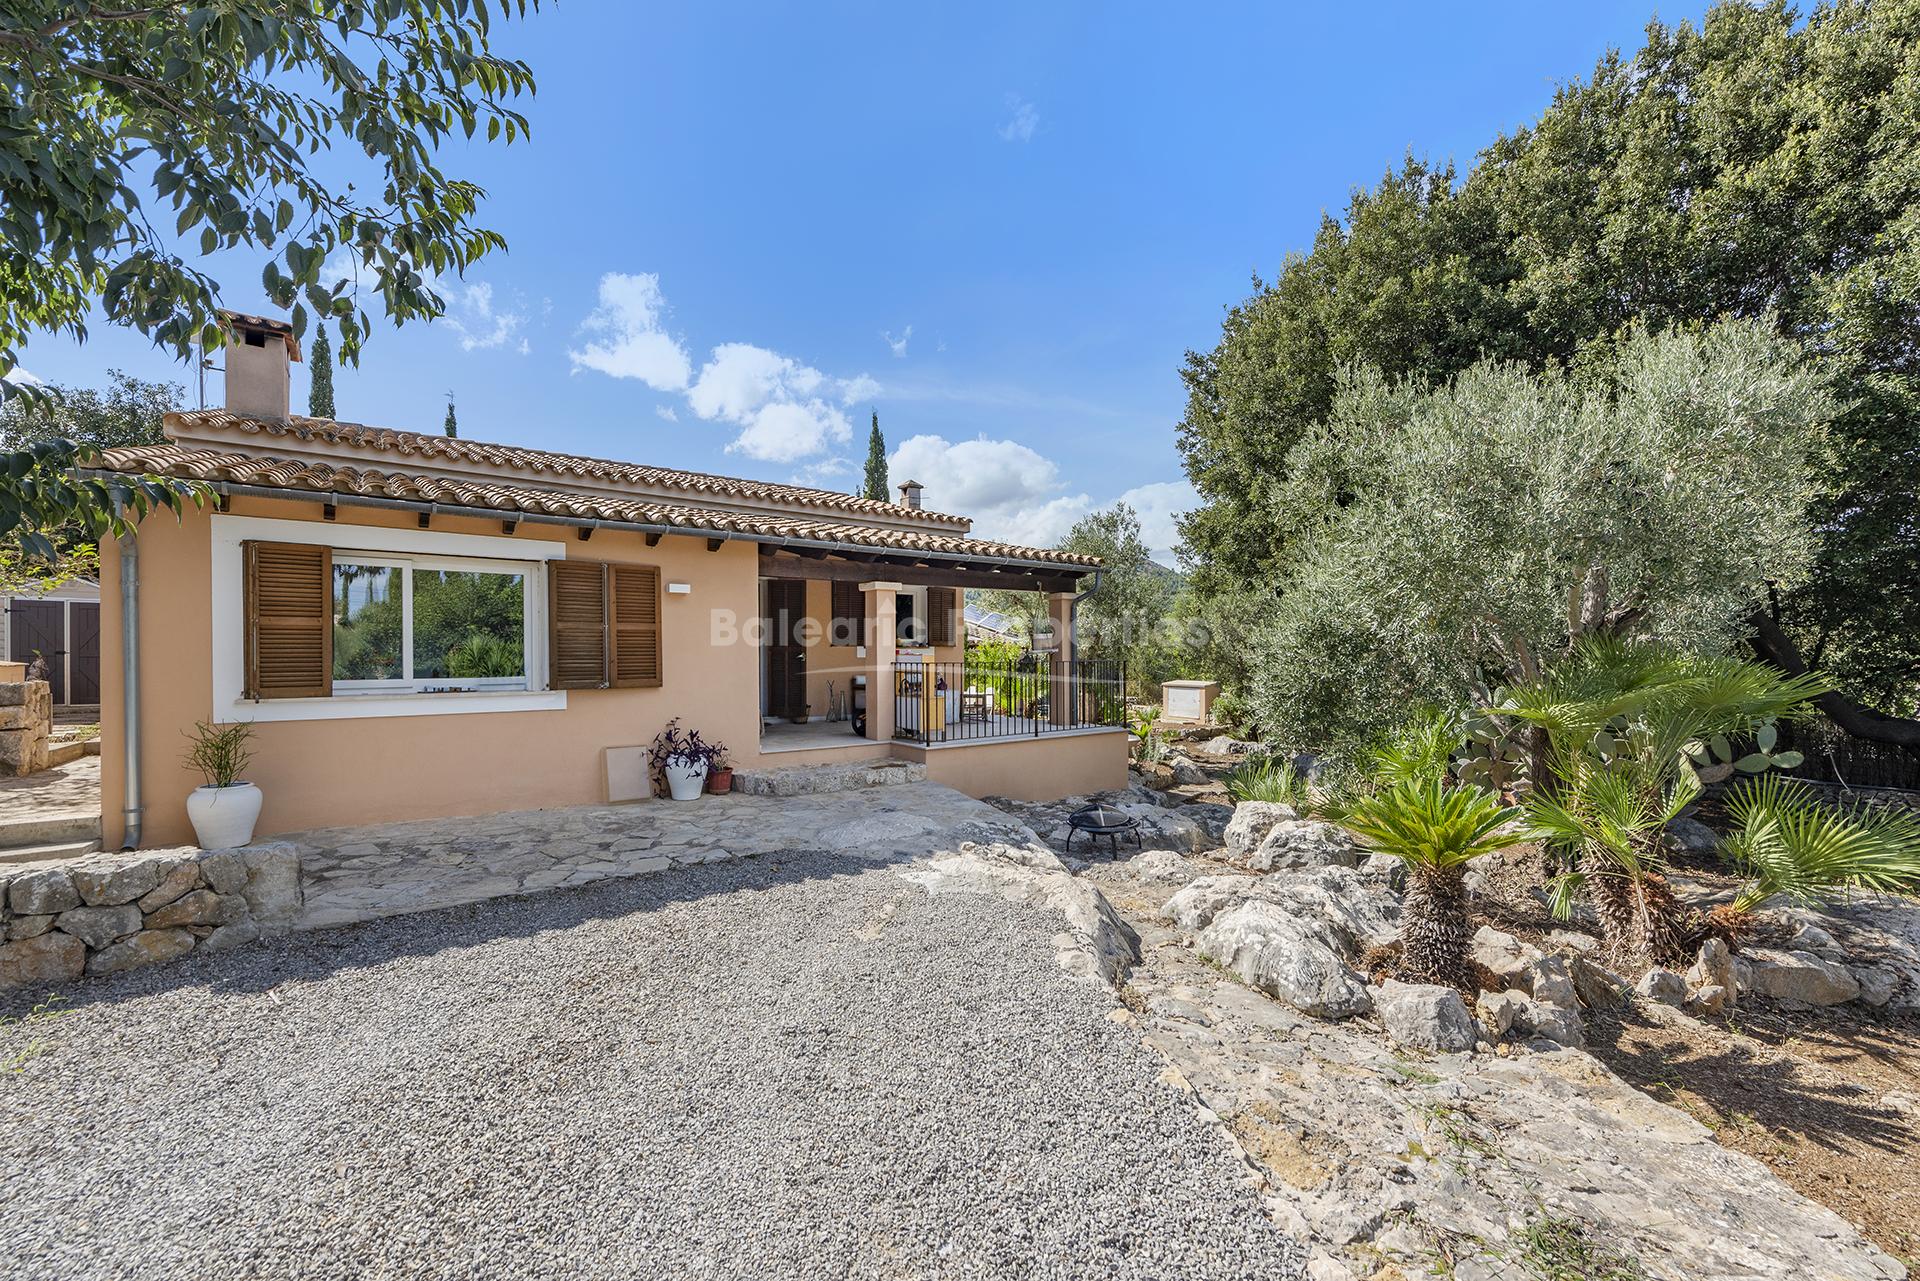 Villa de campo con casa de invitados en venta en una zona tranquila de Pollensa, Mallorca